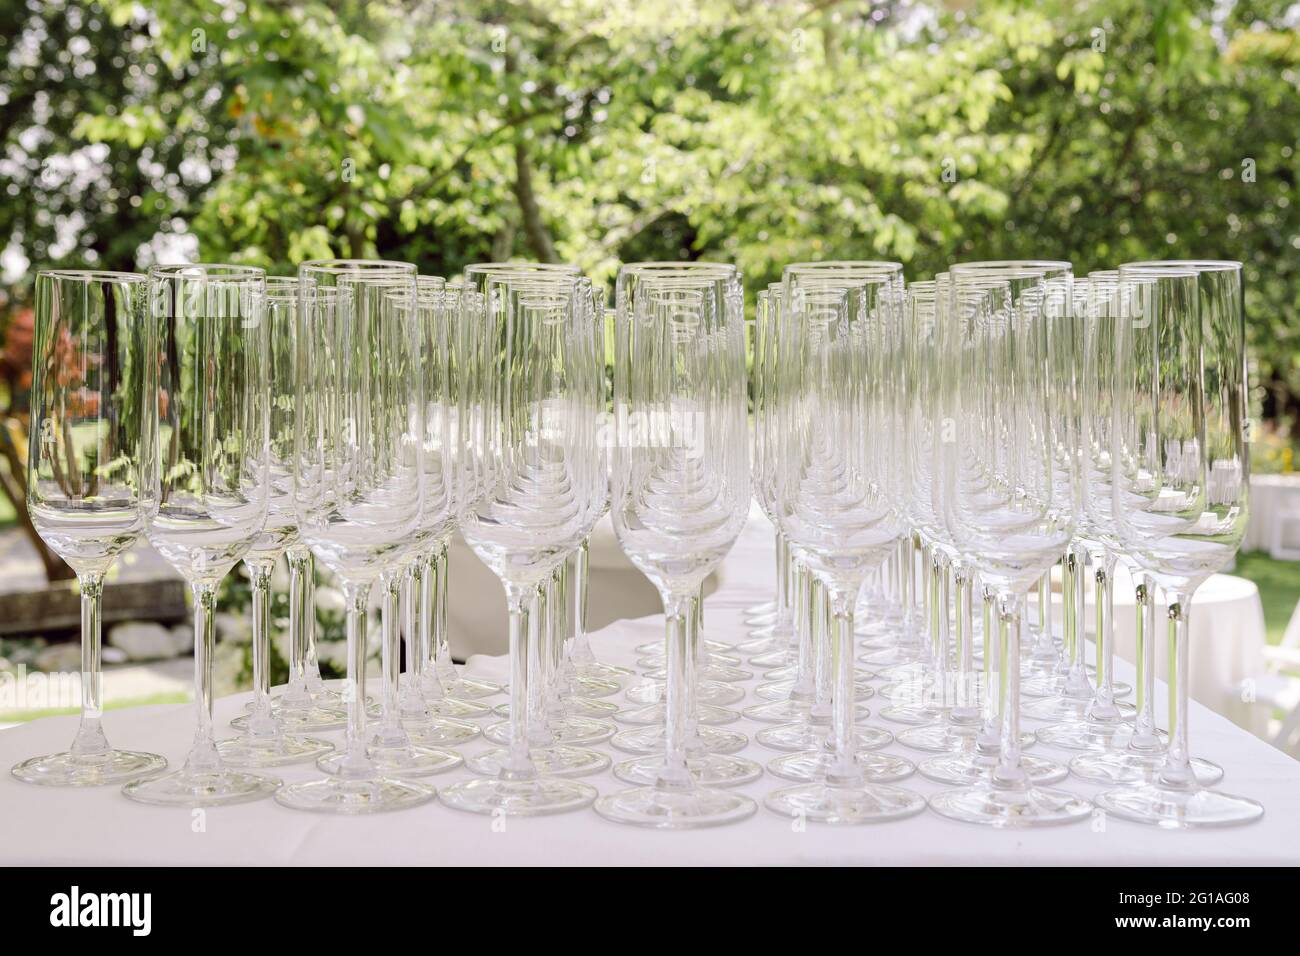 Decine di bicchieri da vino su un tavolo pronti per essere utilizzati per una festa o una festa, per un servizio di catering per matrimoni, con alberi verdi sullo sfondo Foto Stock